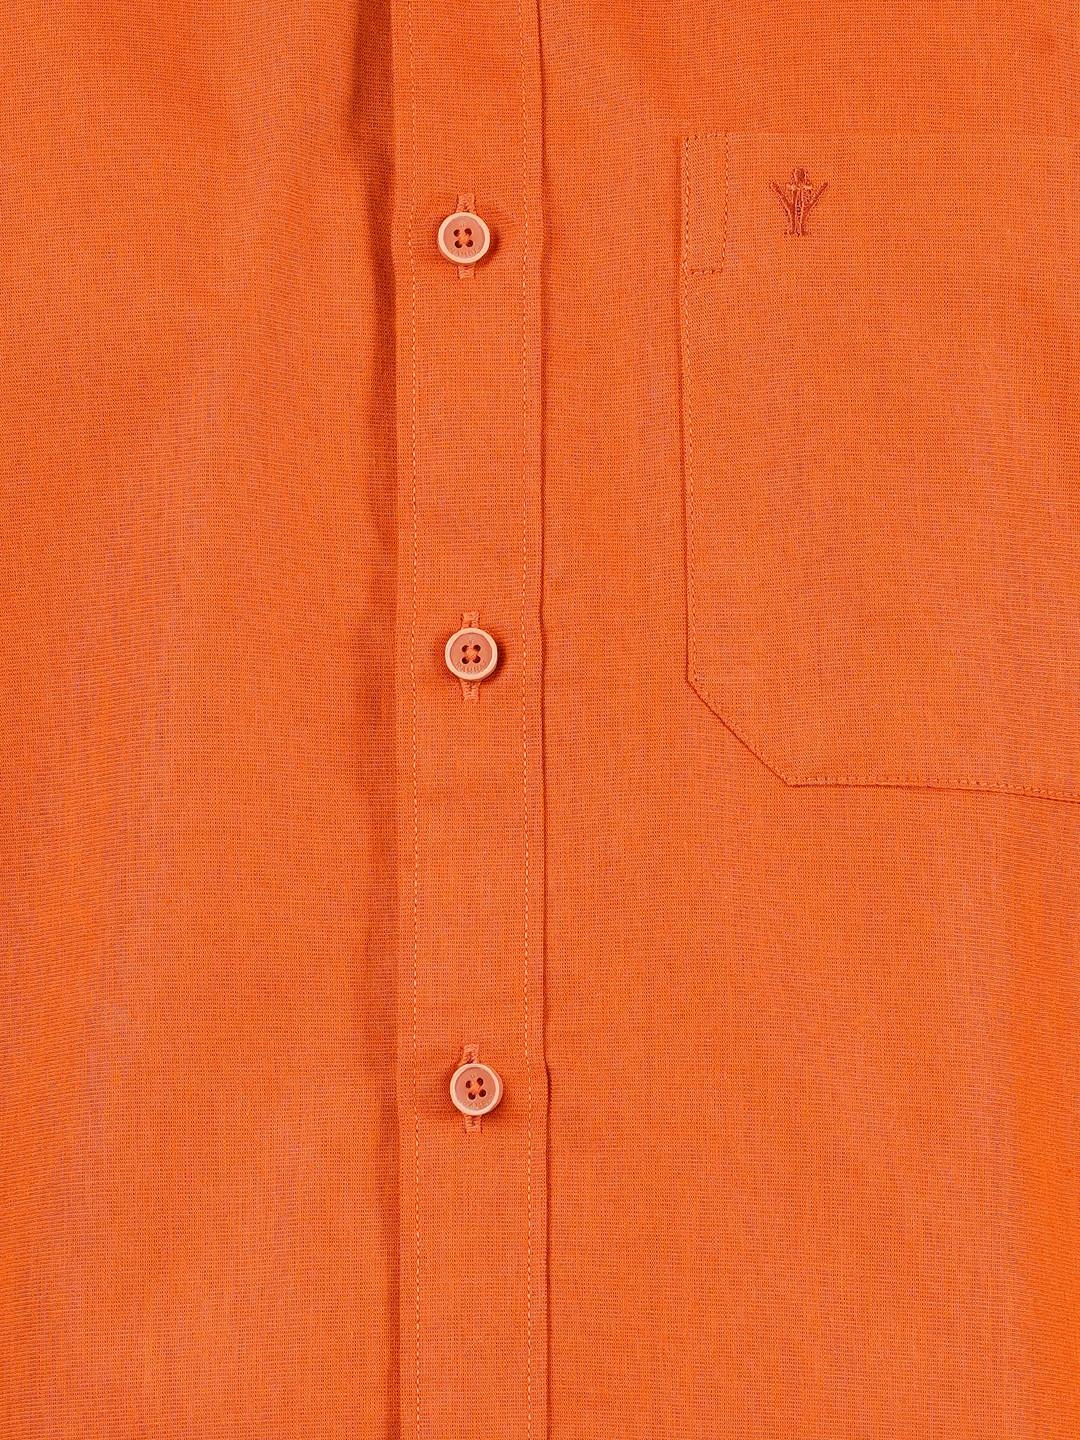 Ramraj | Ramraj Cotton Mens Cotton Orange Half Sleeves Shirt With Jari Dhoti Combo